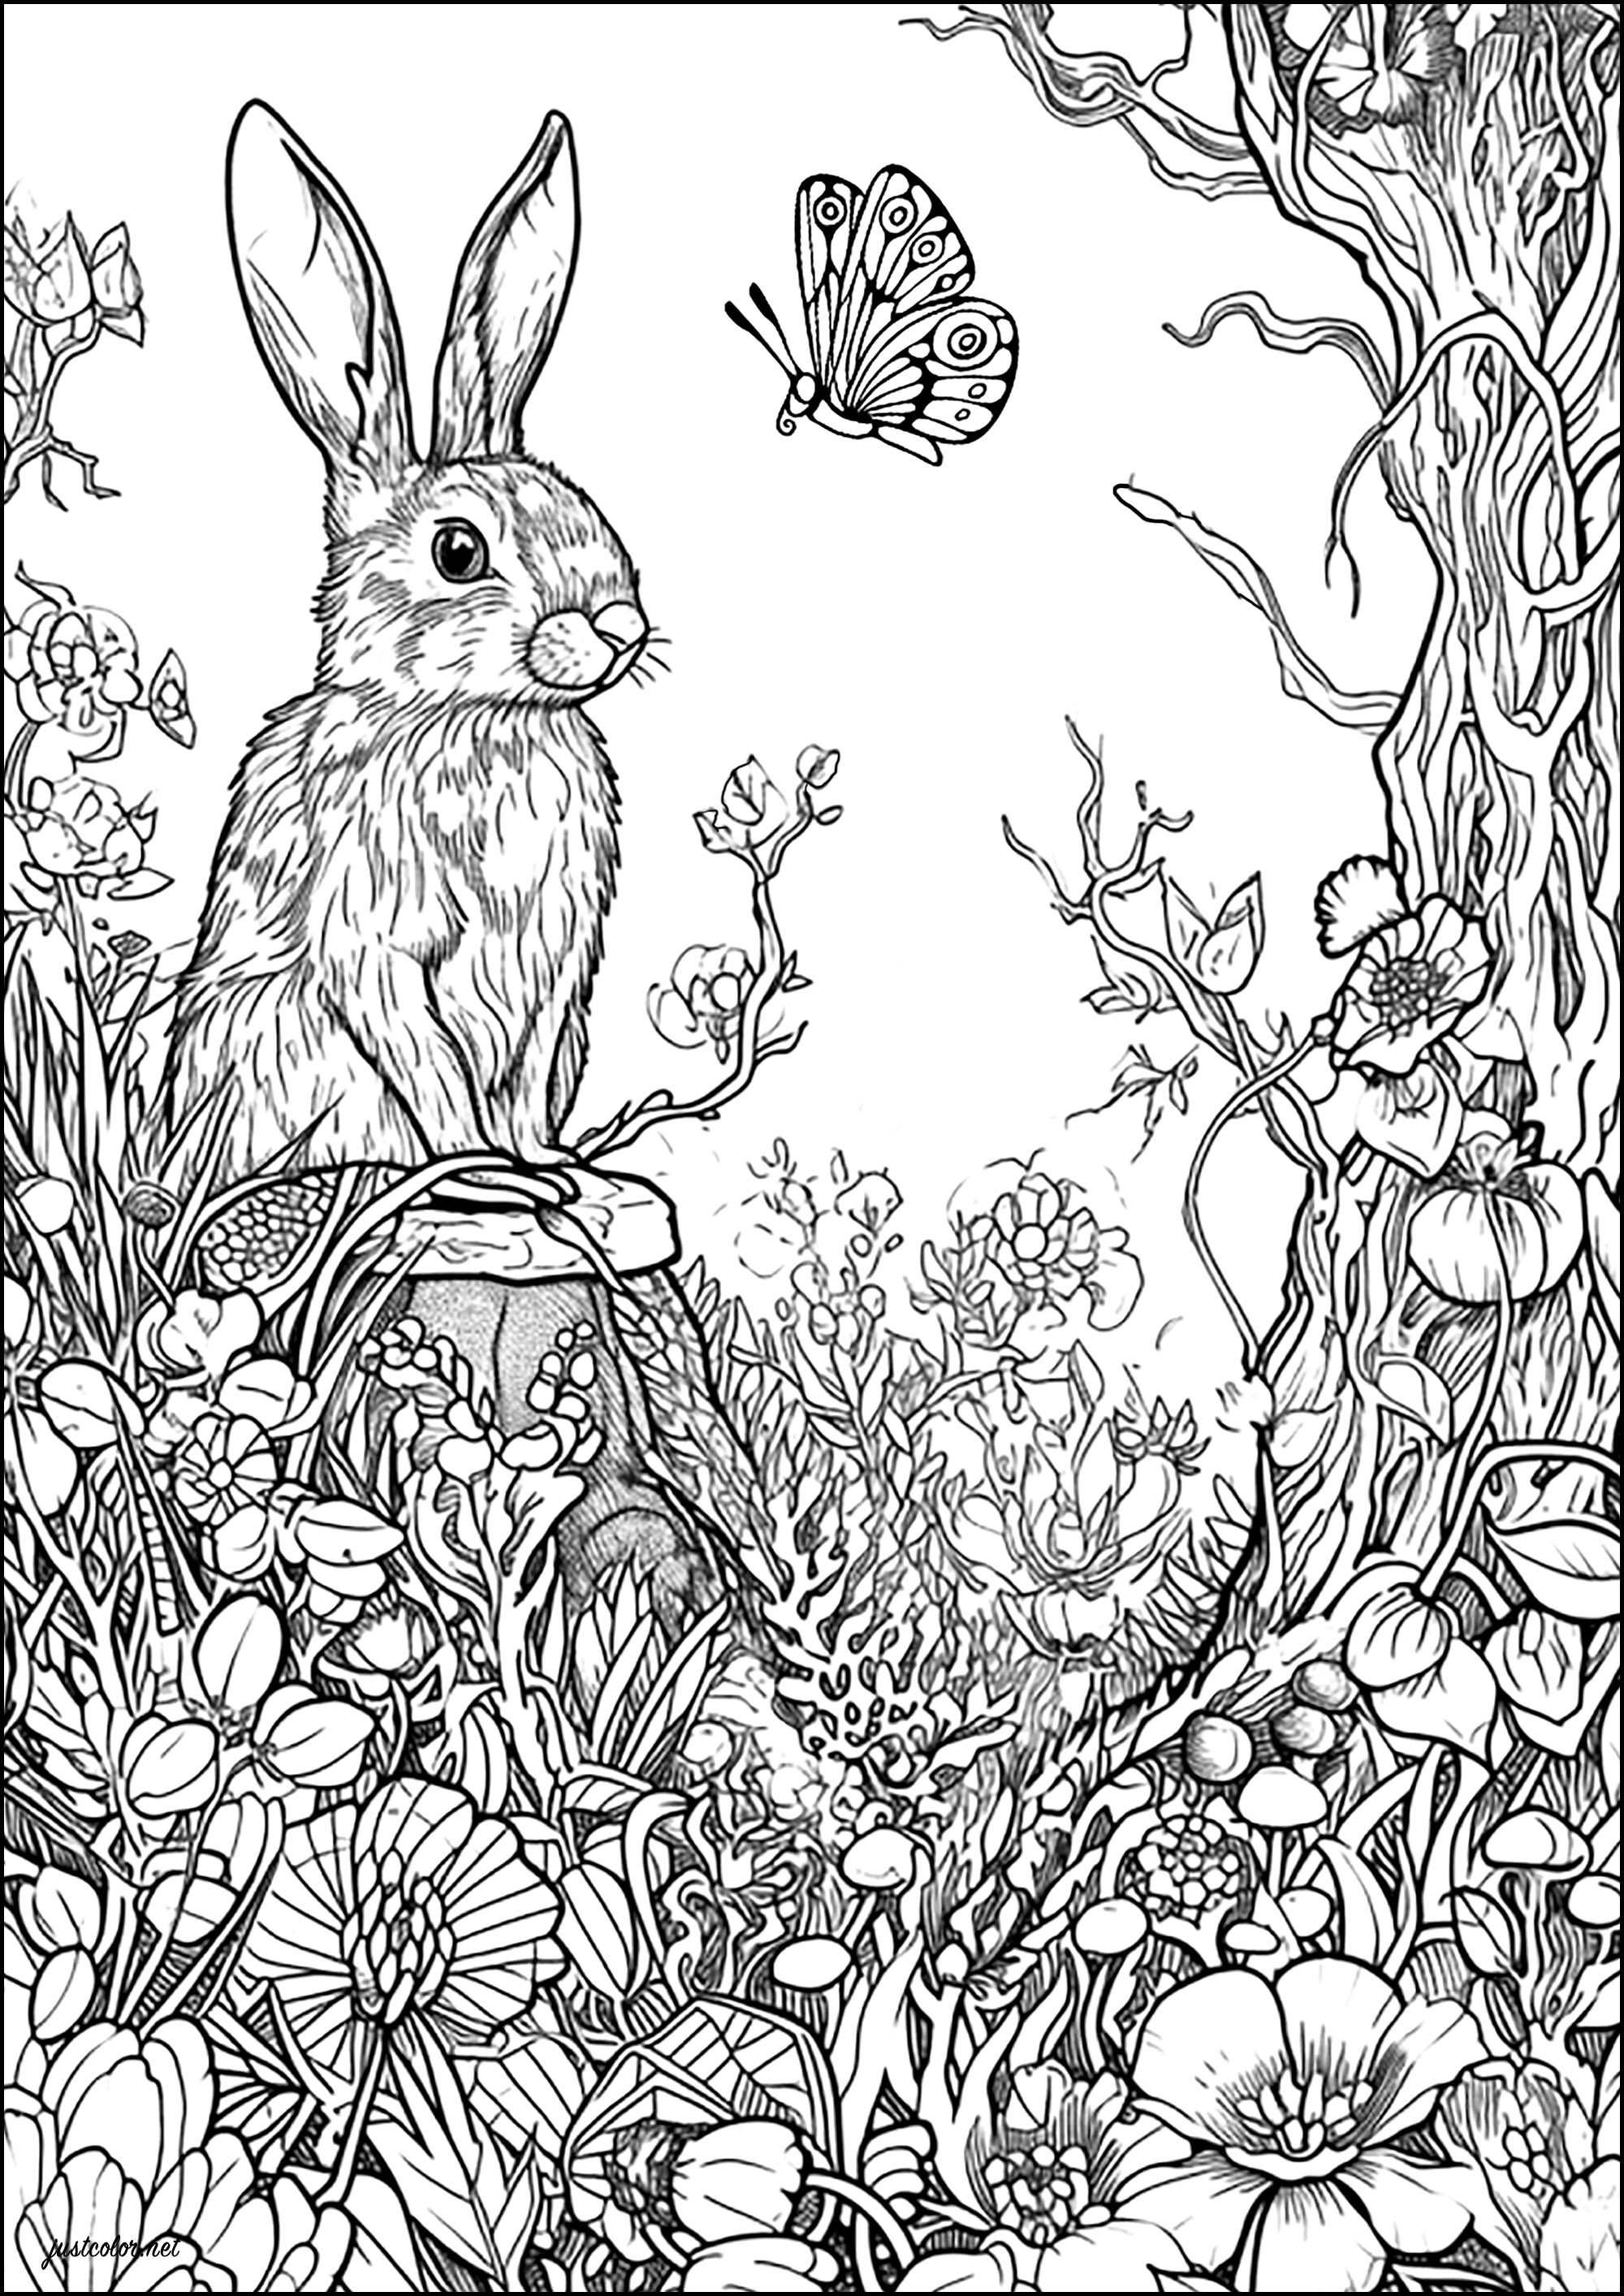 El conejo y la mariposa. Colorea este hermoso conejo y la mariposa con la que parece conversar, así como las numerosas flores que los rodean en este bosque encantado.